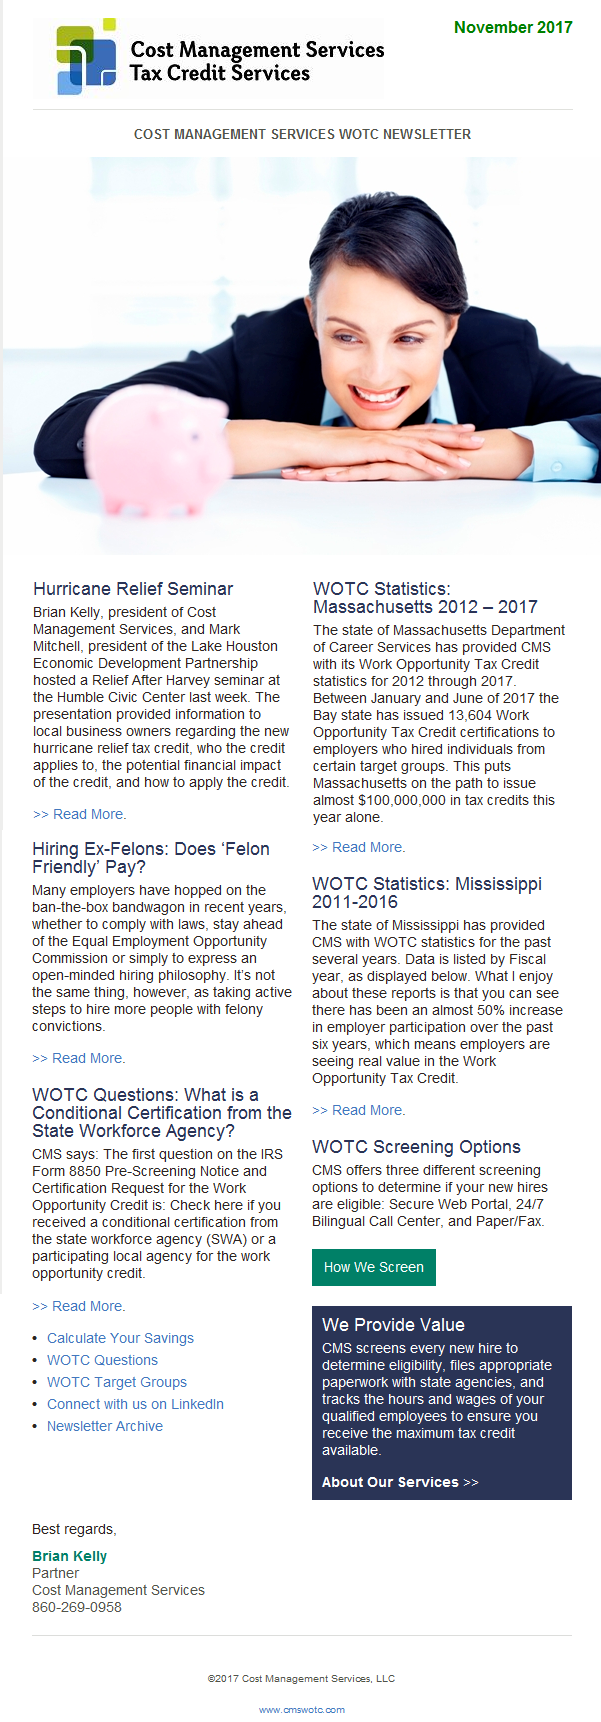 CMS WOTC Newsletter November 2017